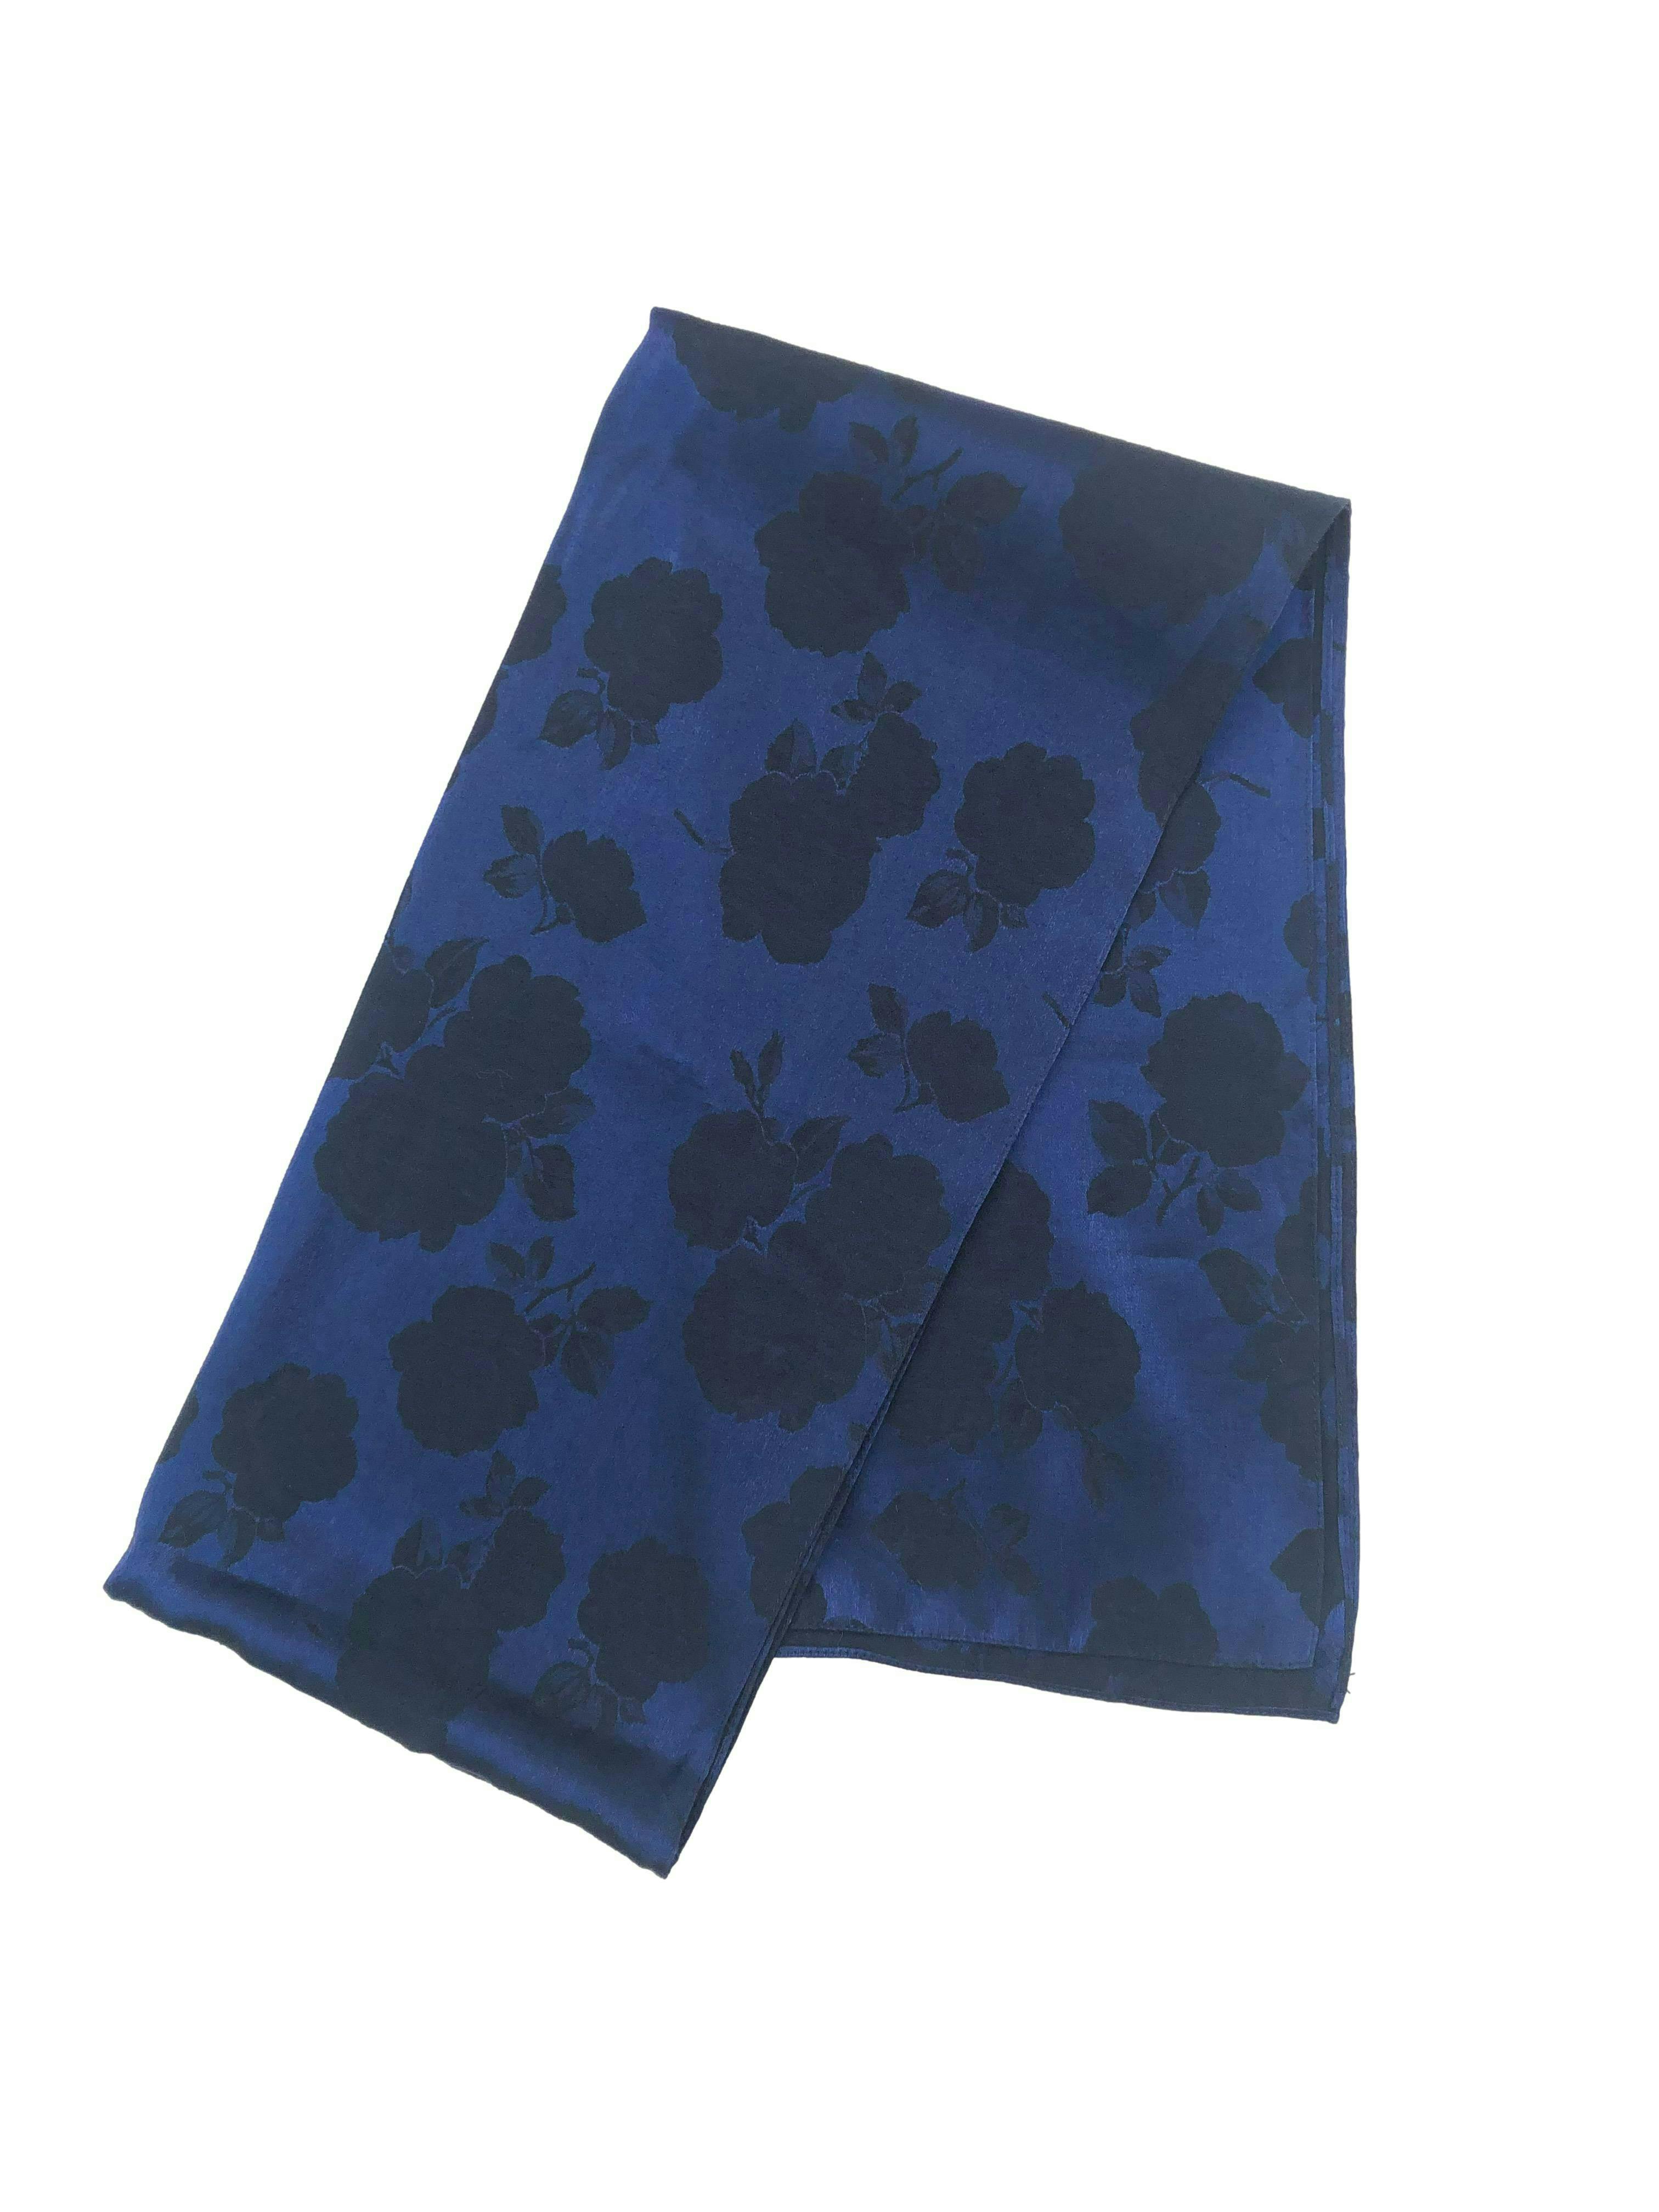 Pañuelo azul satinado con flores oscuras al tono. Medidas 46x196cm